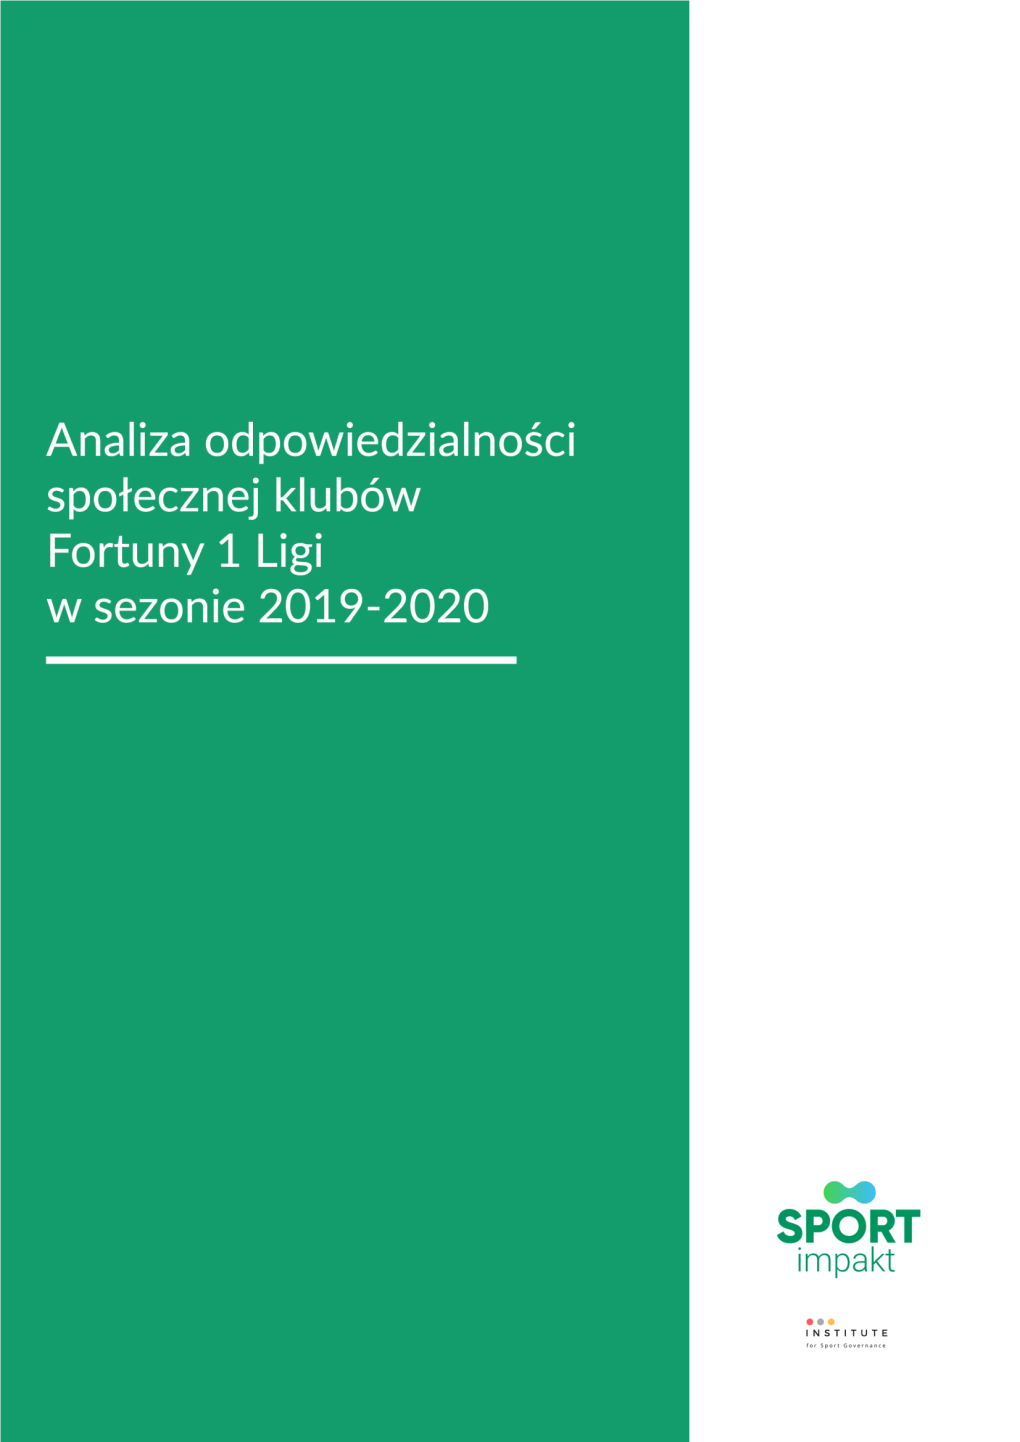 Analiza Odpowiedzialności Społecznej Klubów Fortuny 1 Ligi W Sezonie 2019/2020